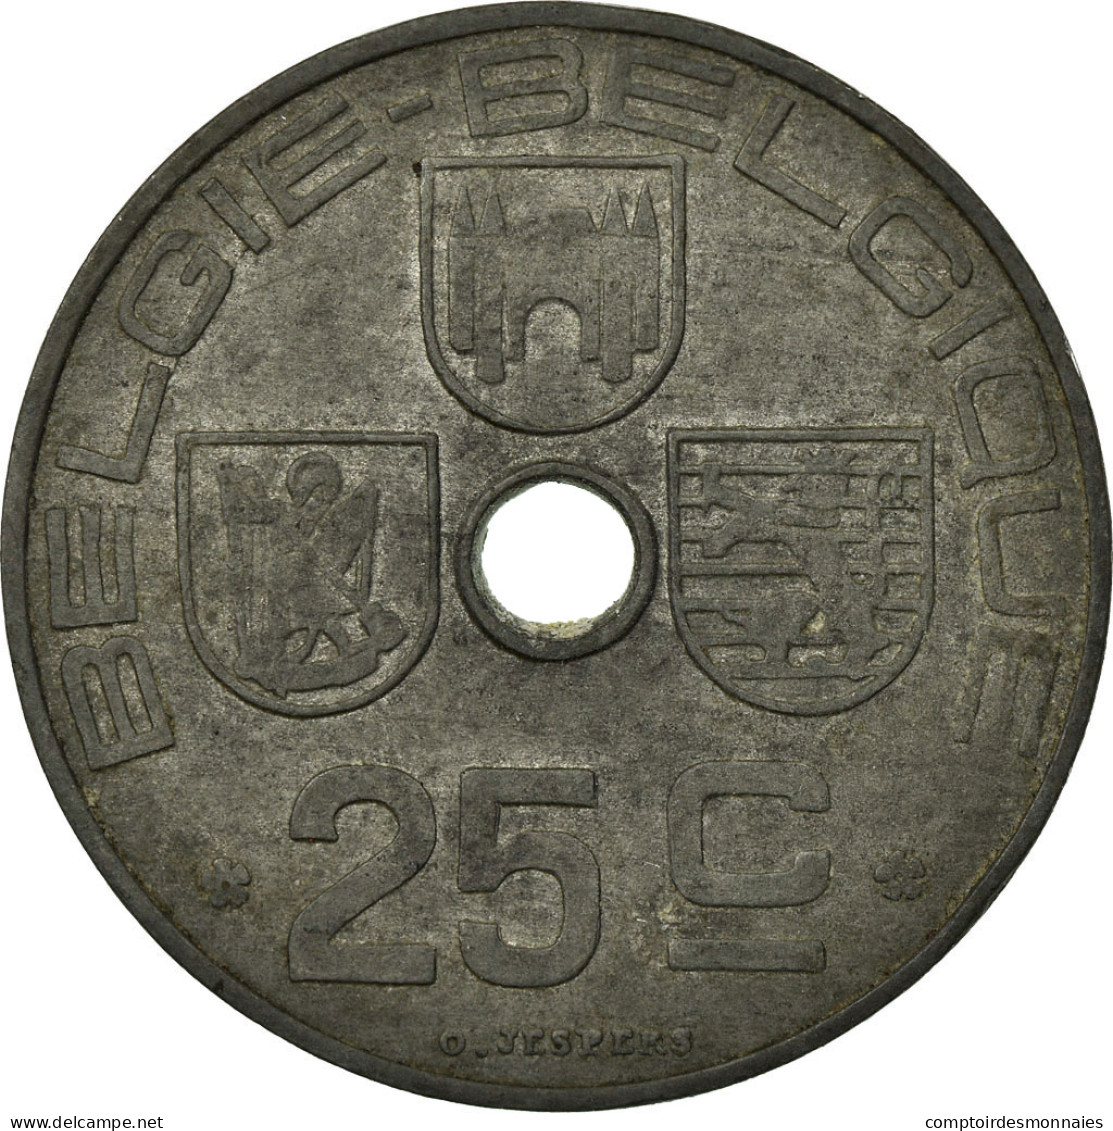 Monnaie, Belgique, 25 Centimes, 1945, TB+, Zinc, KM:132 - 10 Centimes & 25 Centimes